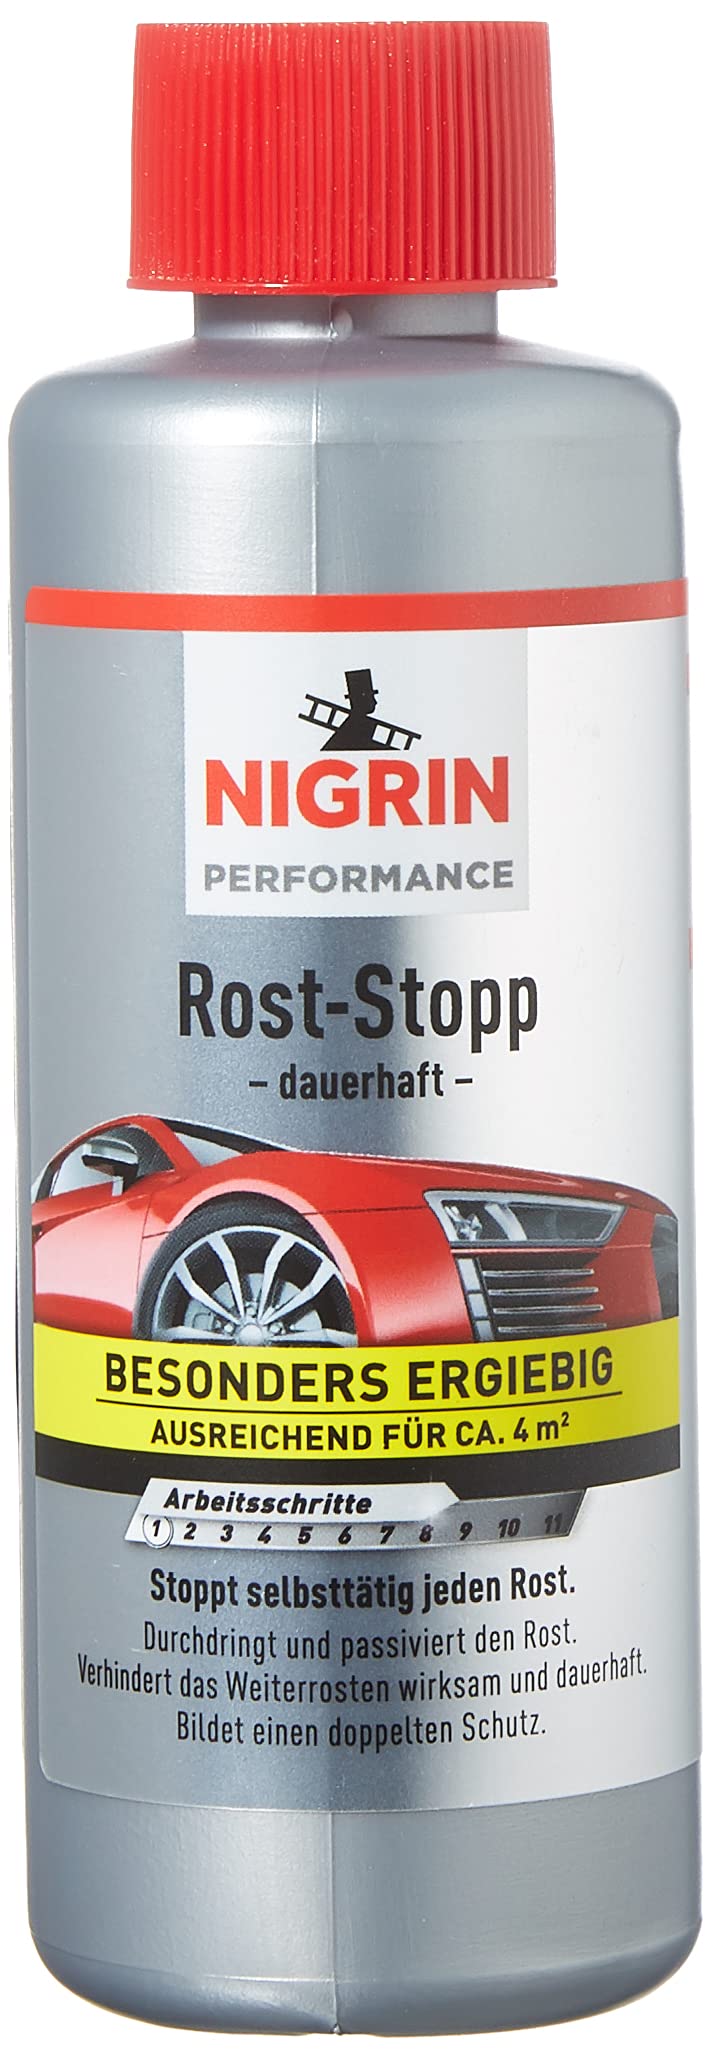 NIGRIN Rost-Stopp, 200 ml, Korrosionsschutz auf Tanin-Basis, langanhaltender Rostschutz von NIGRIN